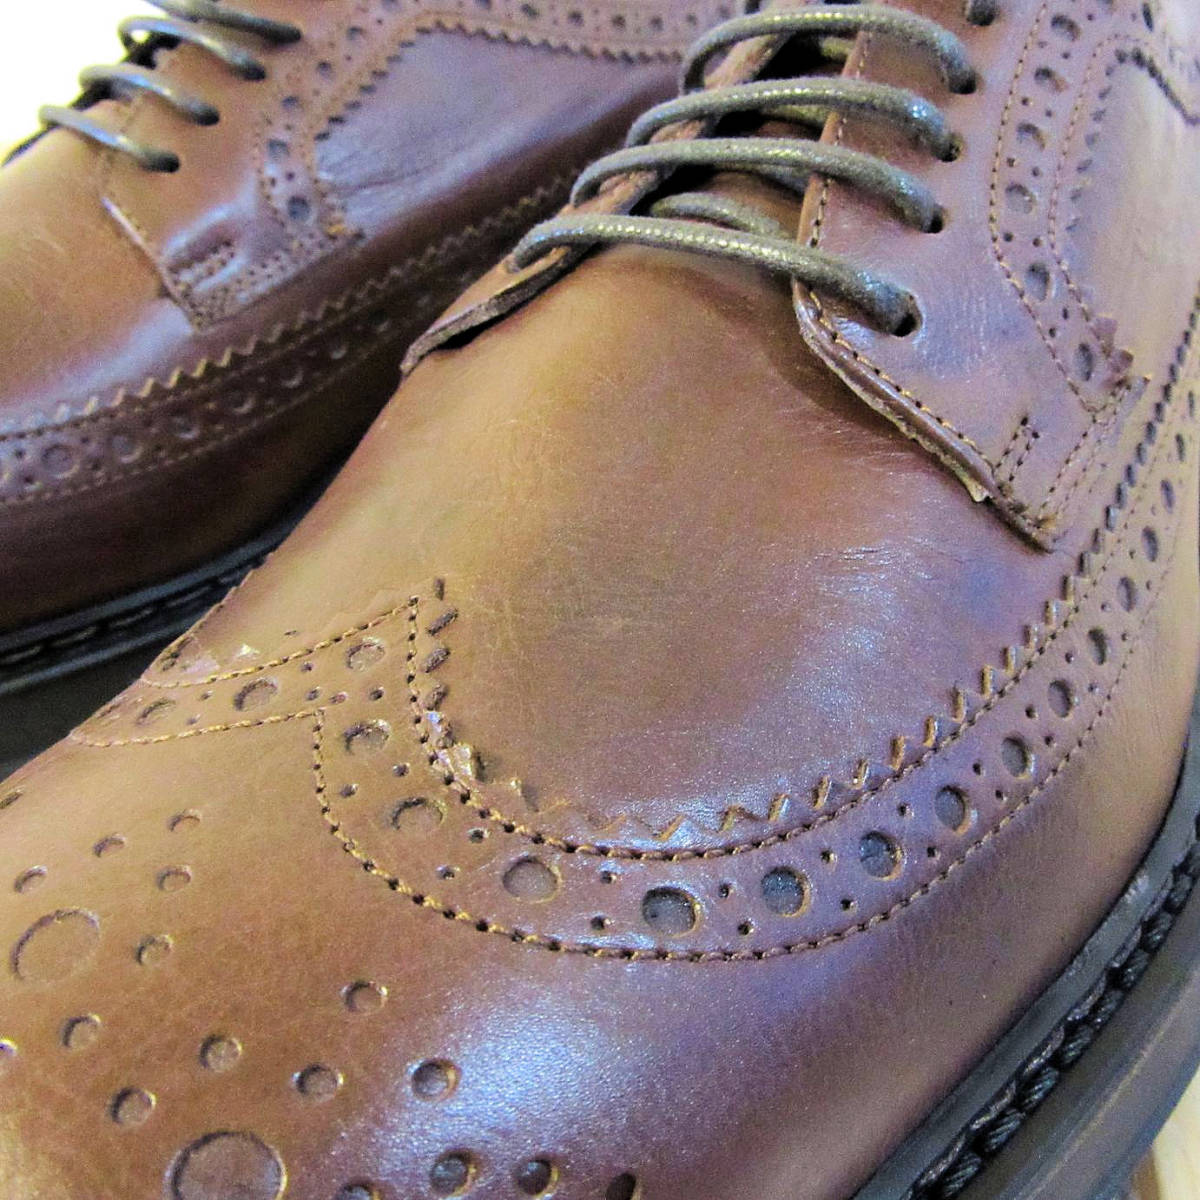 未使用 やや傷・スレあり BOEMOS ボエモス レザーシューズ 革靴 ブローグシューズ ビジネスシューズ ブラウン 茶色 メンズ 41 26cm 程度 の画像5